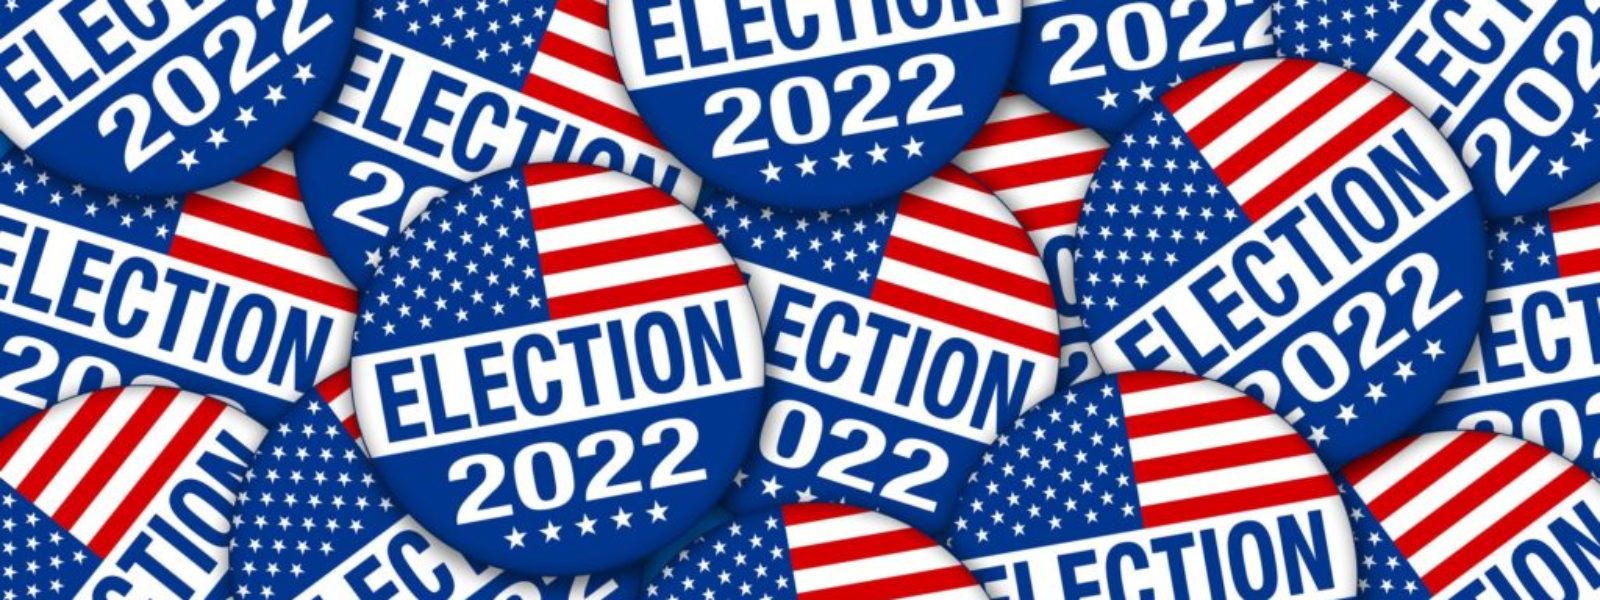 Electionn 2022